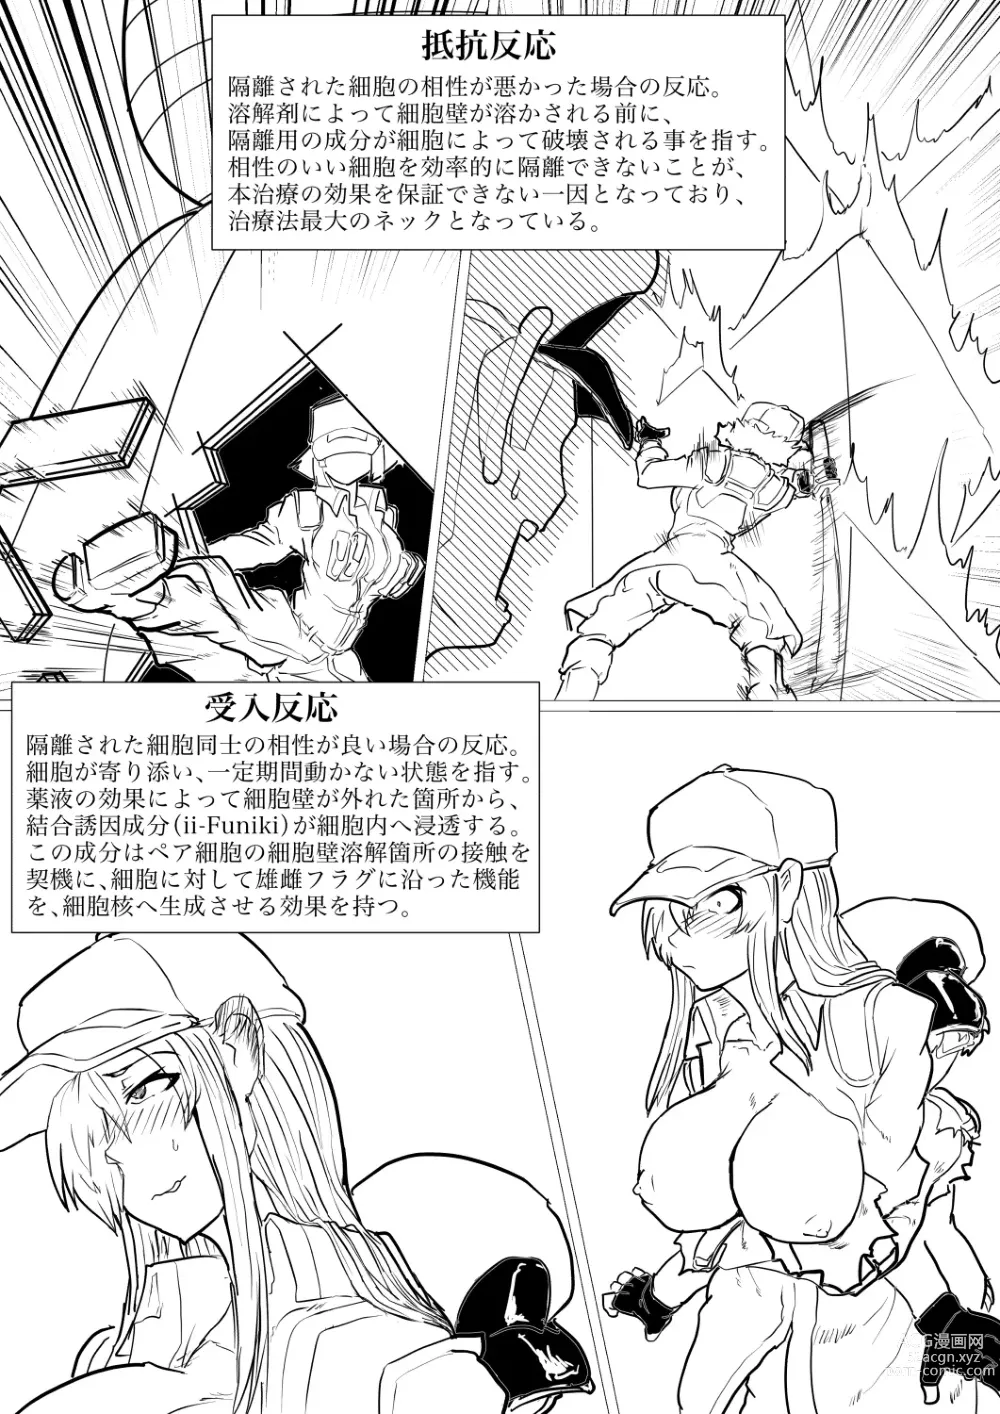 Page 3 of doujinshi Dai 1-ki chiryo-yo no kiki kosei